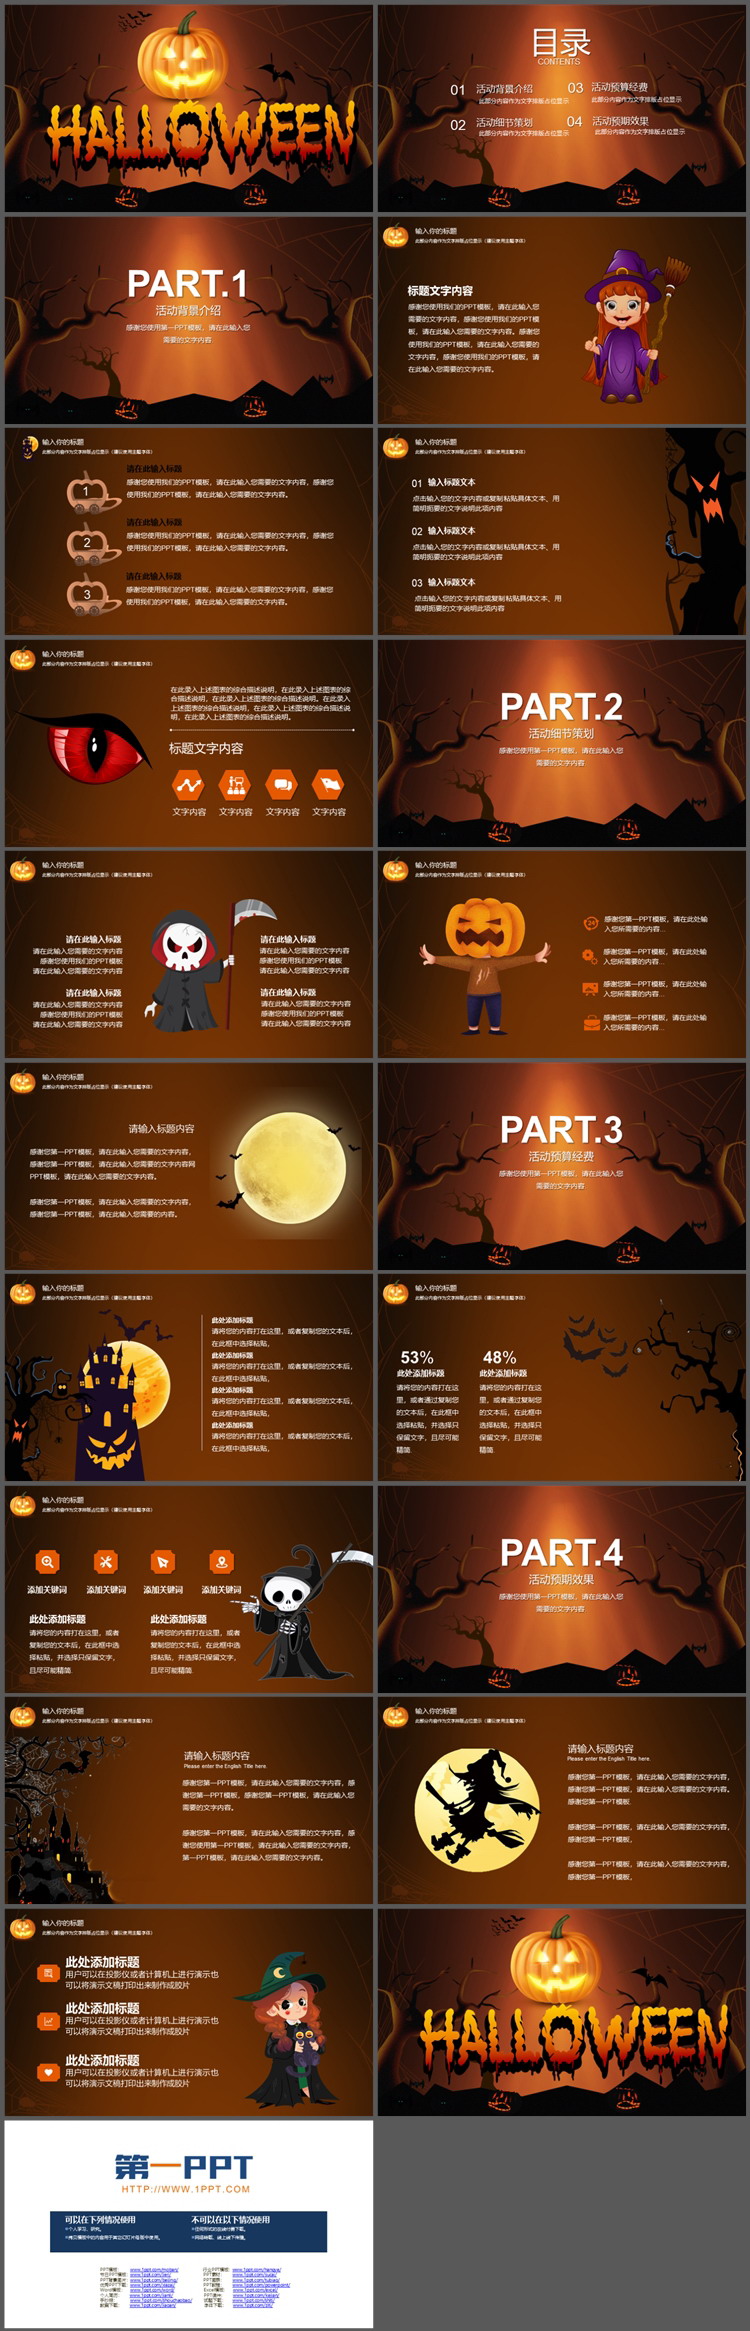 卡通南瓜灯背景的Halloween幻灯片模板免费下载